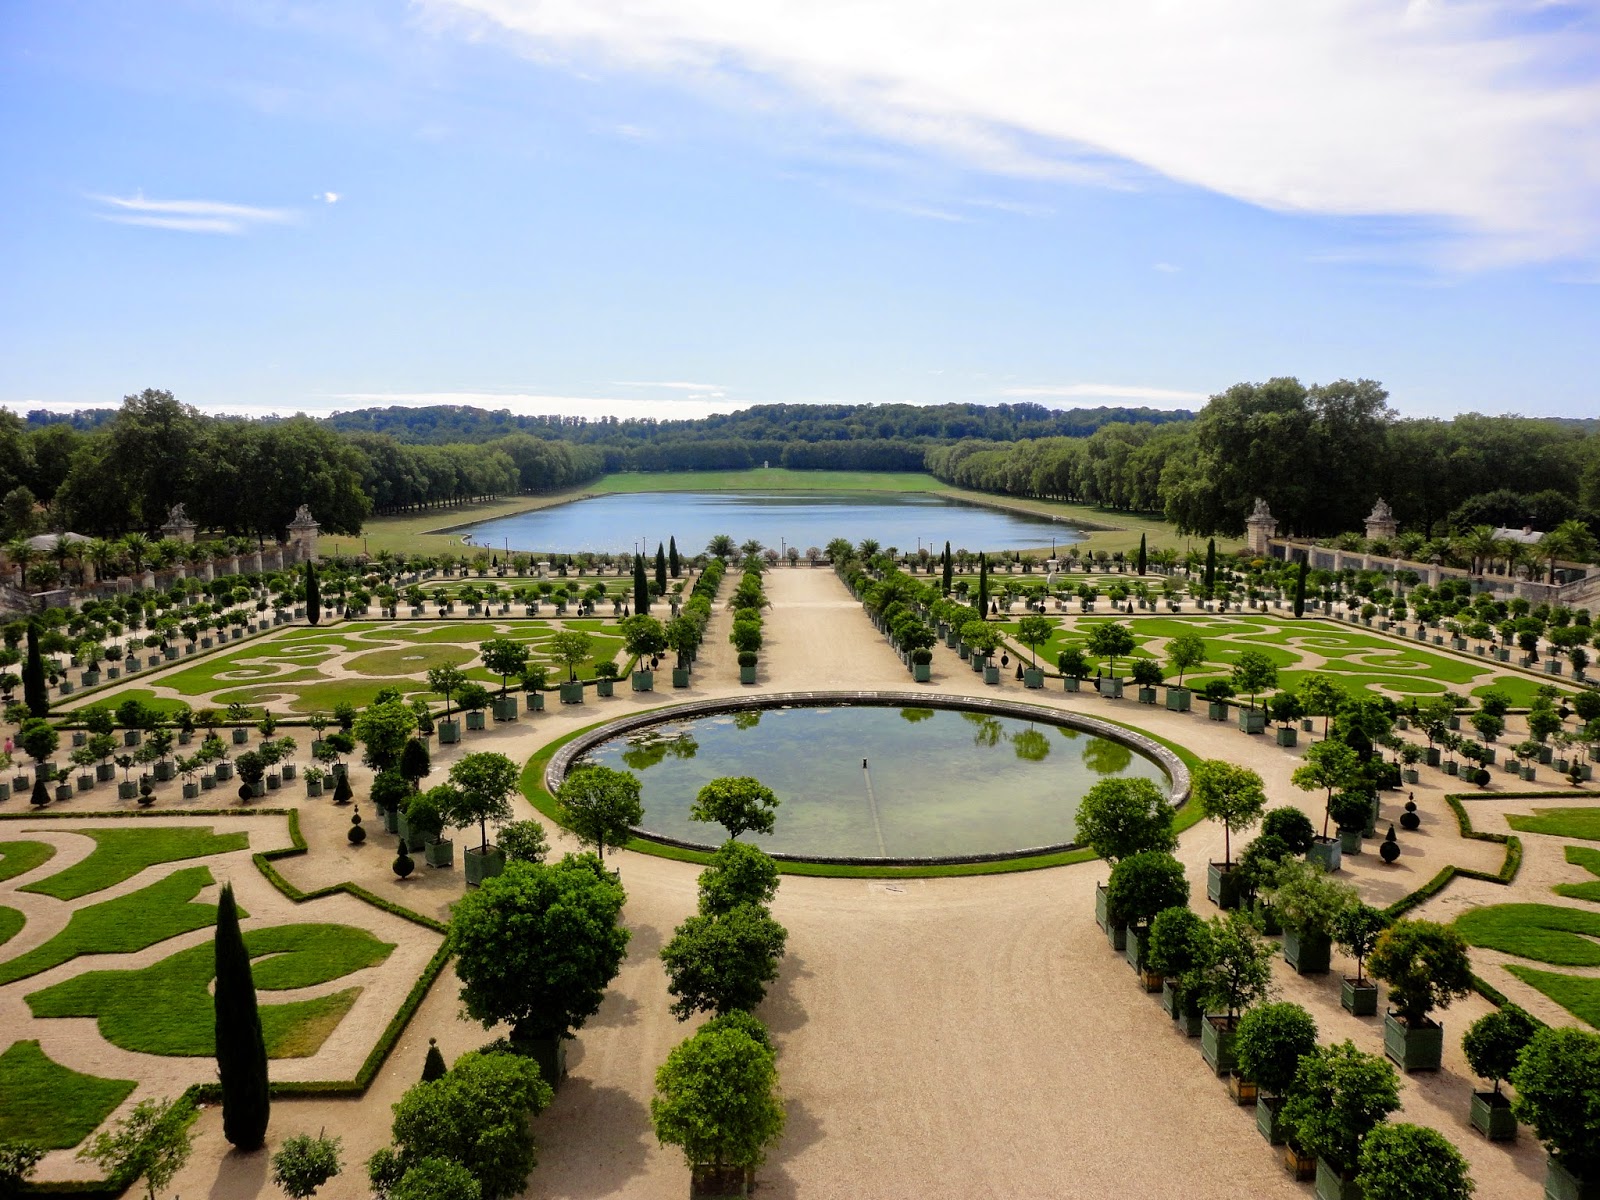 Gardens at the Chateau de Versailles, Paris